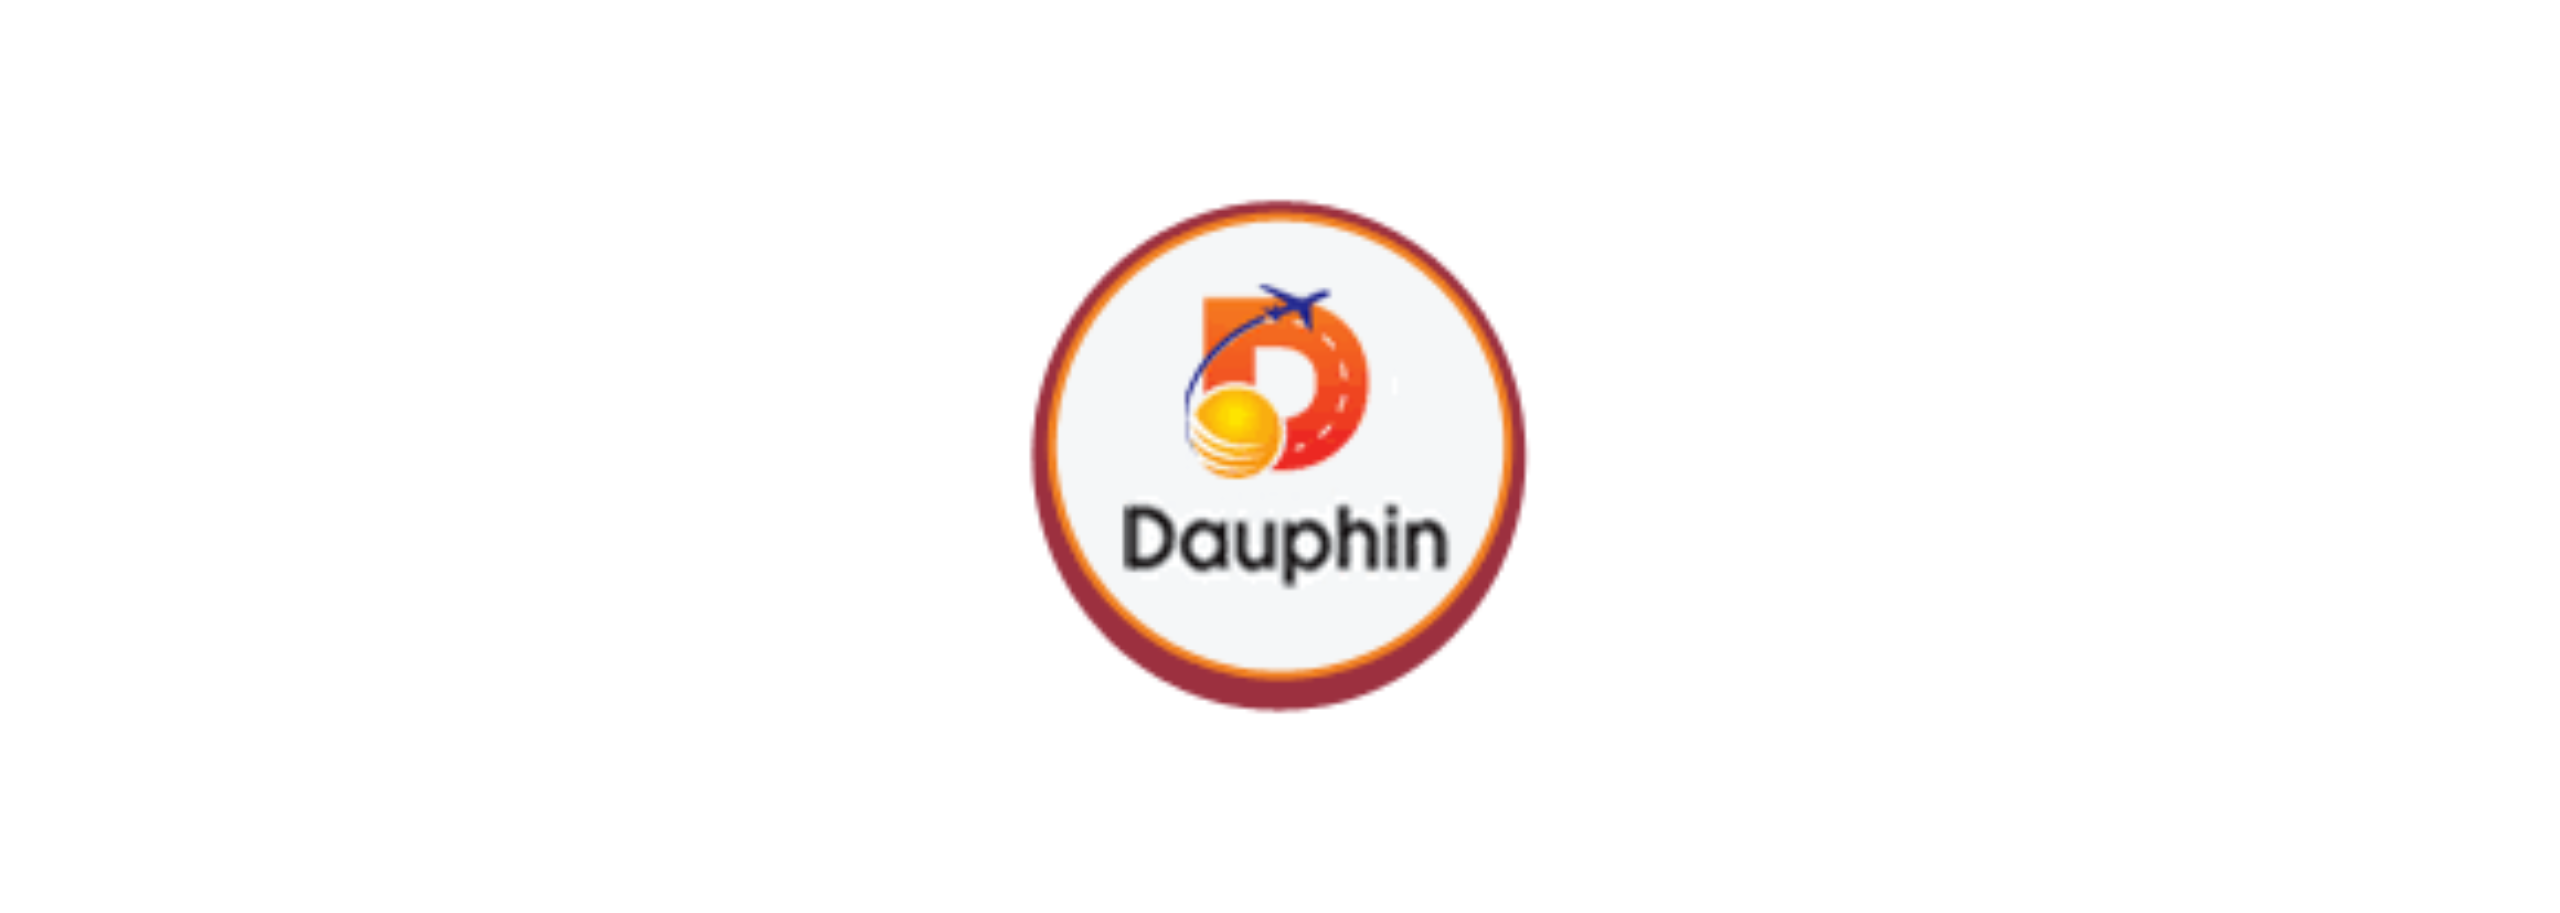 dauphin travel marketing new